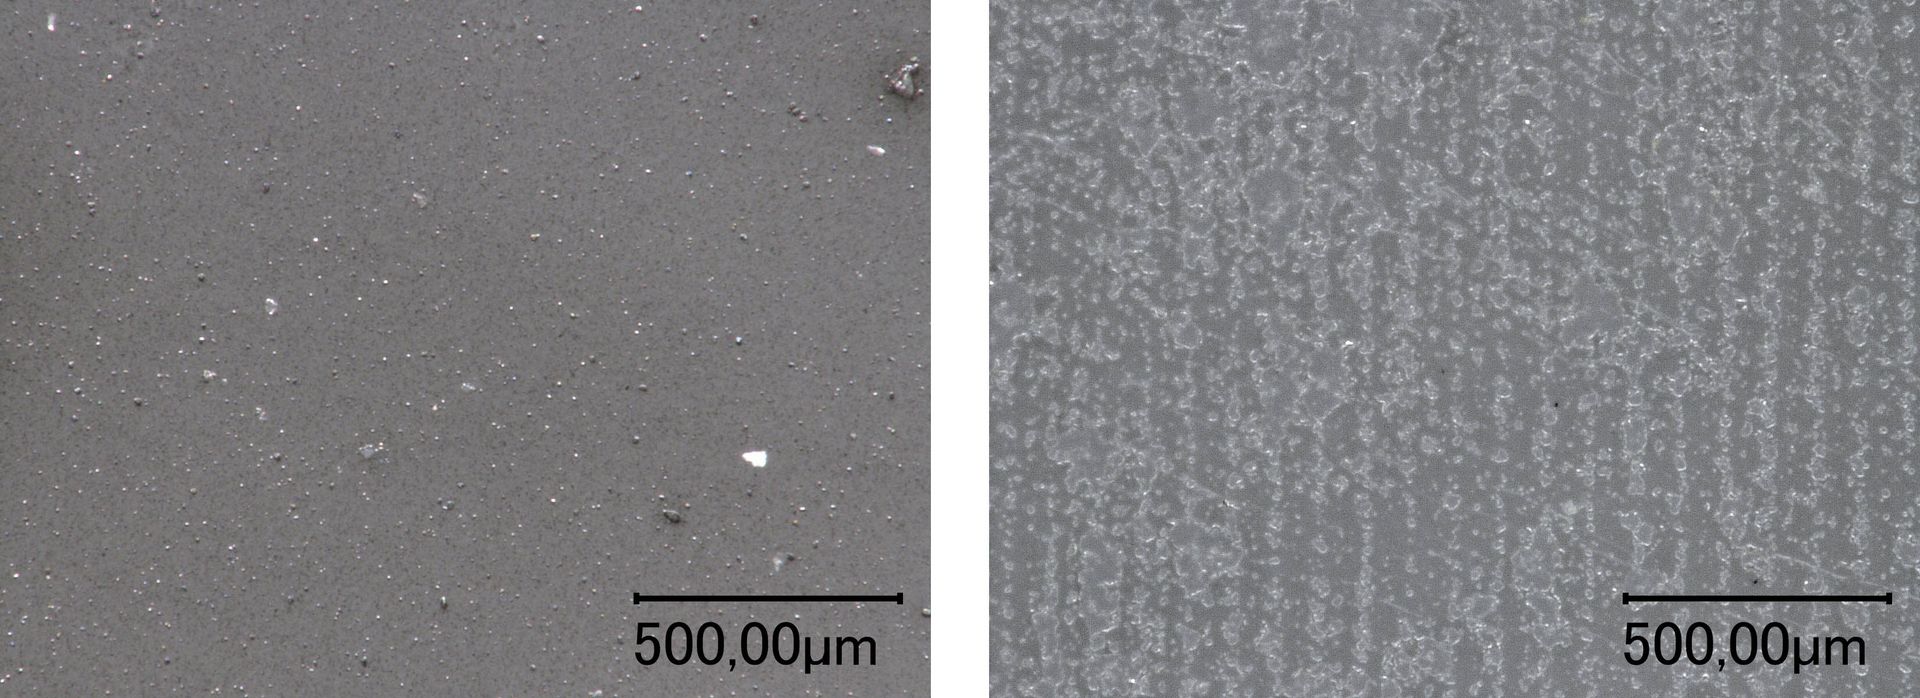 Die mikroskopische Aufnahme von Polyethylen mit Primer vor (links) und nach Laserbehandlung (rechts) sind gezeigt.